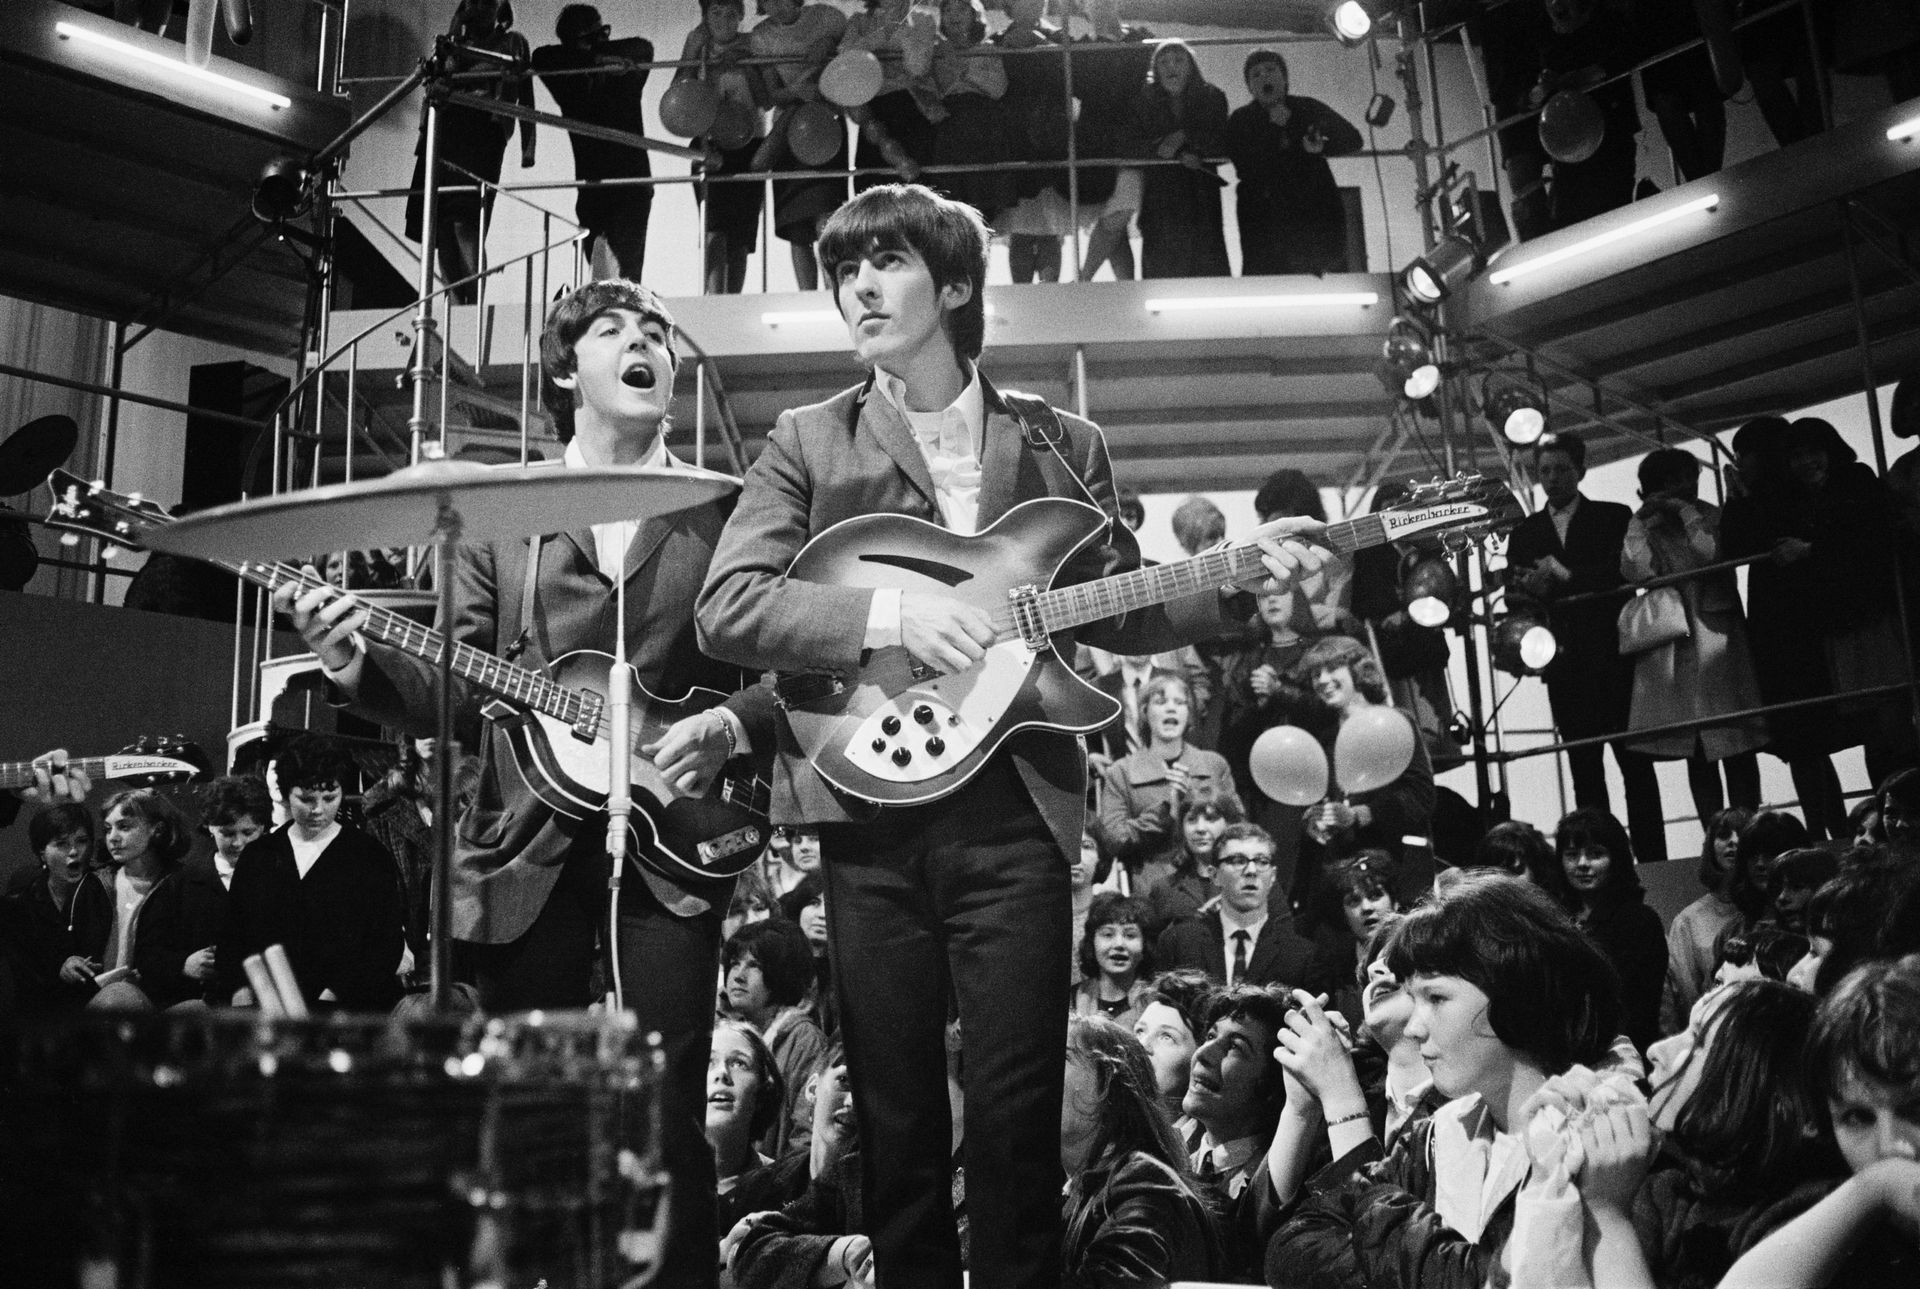 Une guitare ayant appartenu à John Lennon et George Harrison estimée à 460.000€